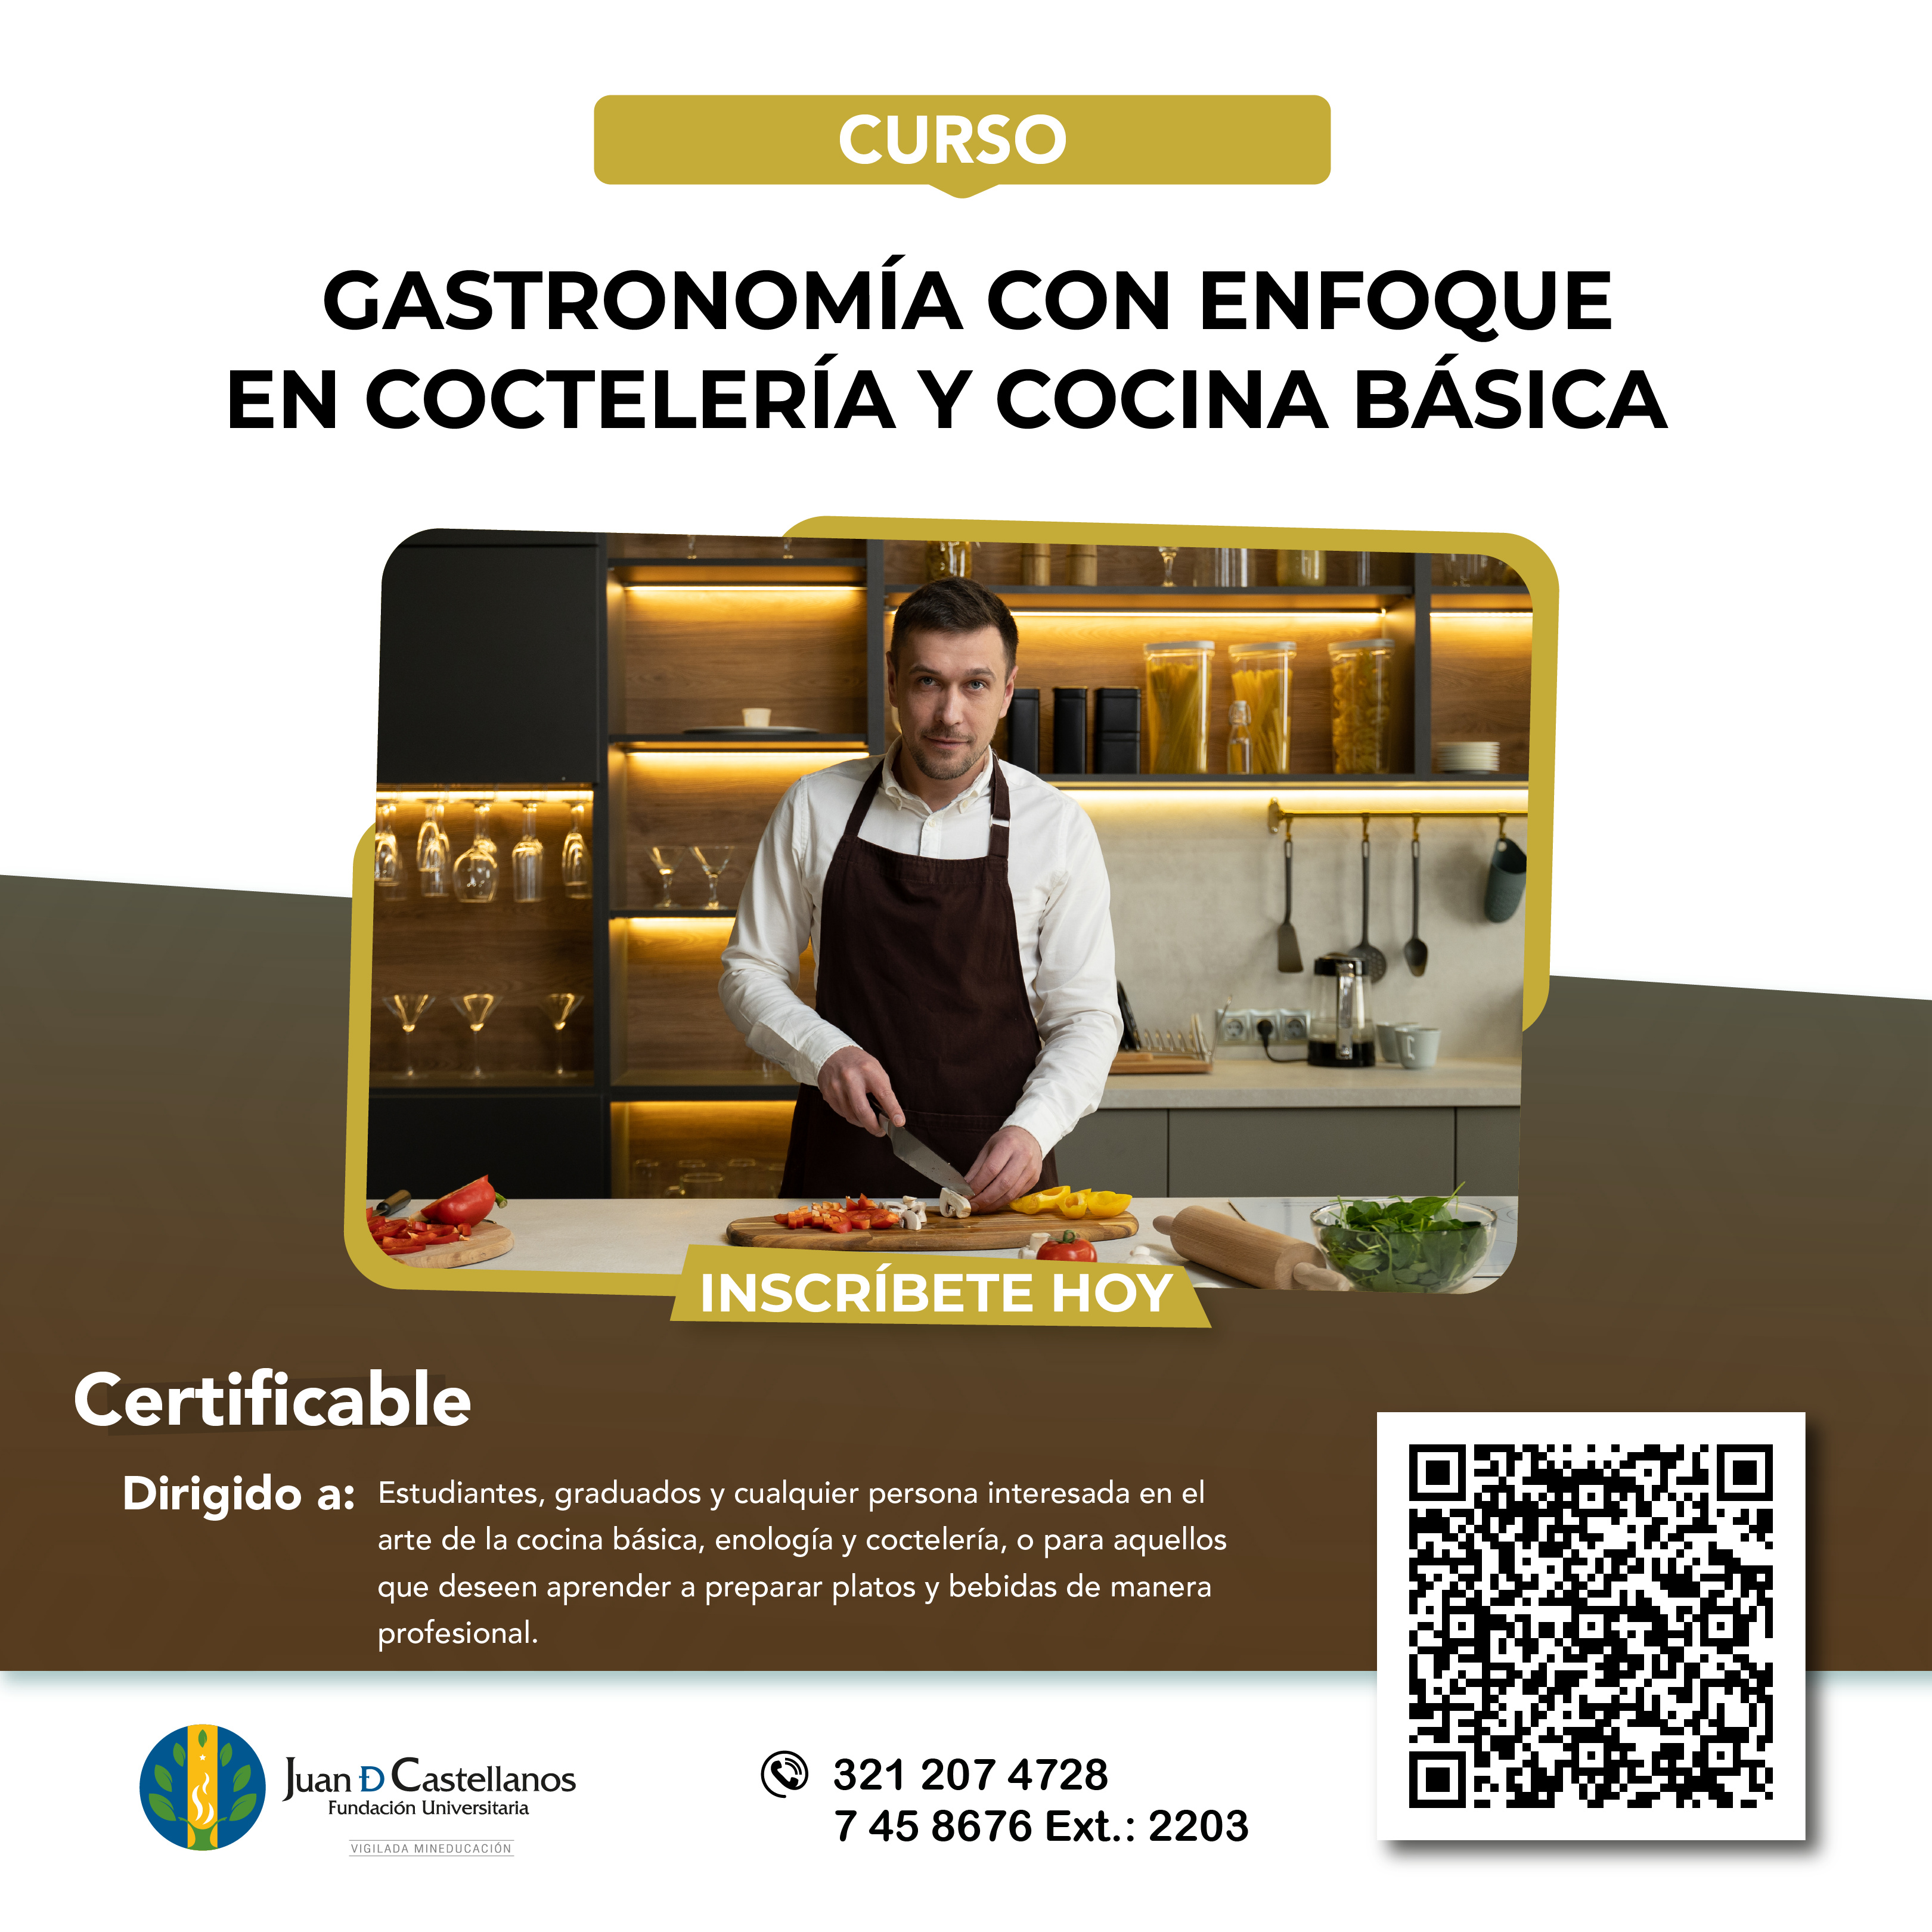 ¡Inscríbete al curso de Gastronomía con Enfoque en Coctelería y Cocina Básica!